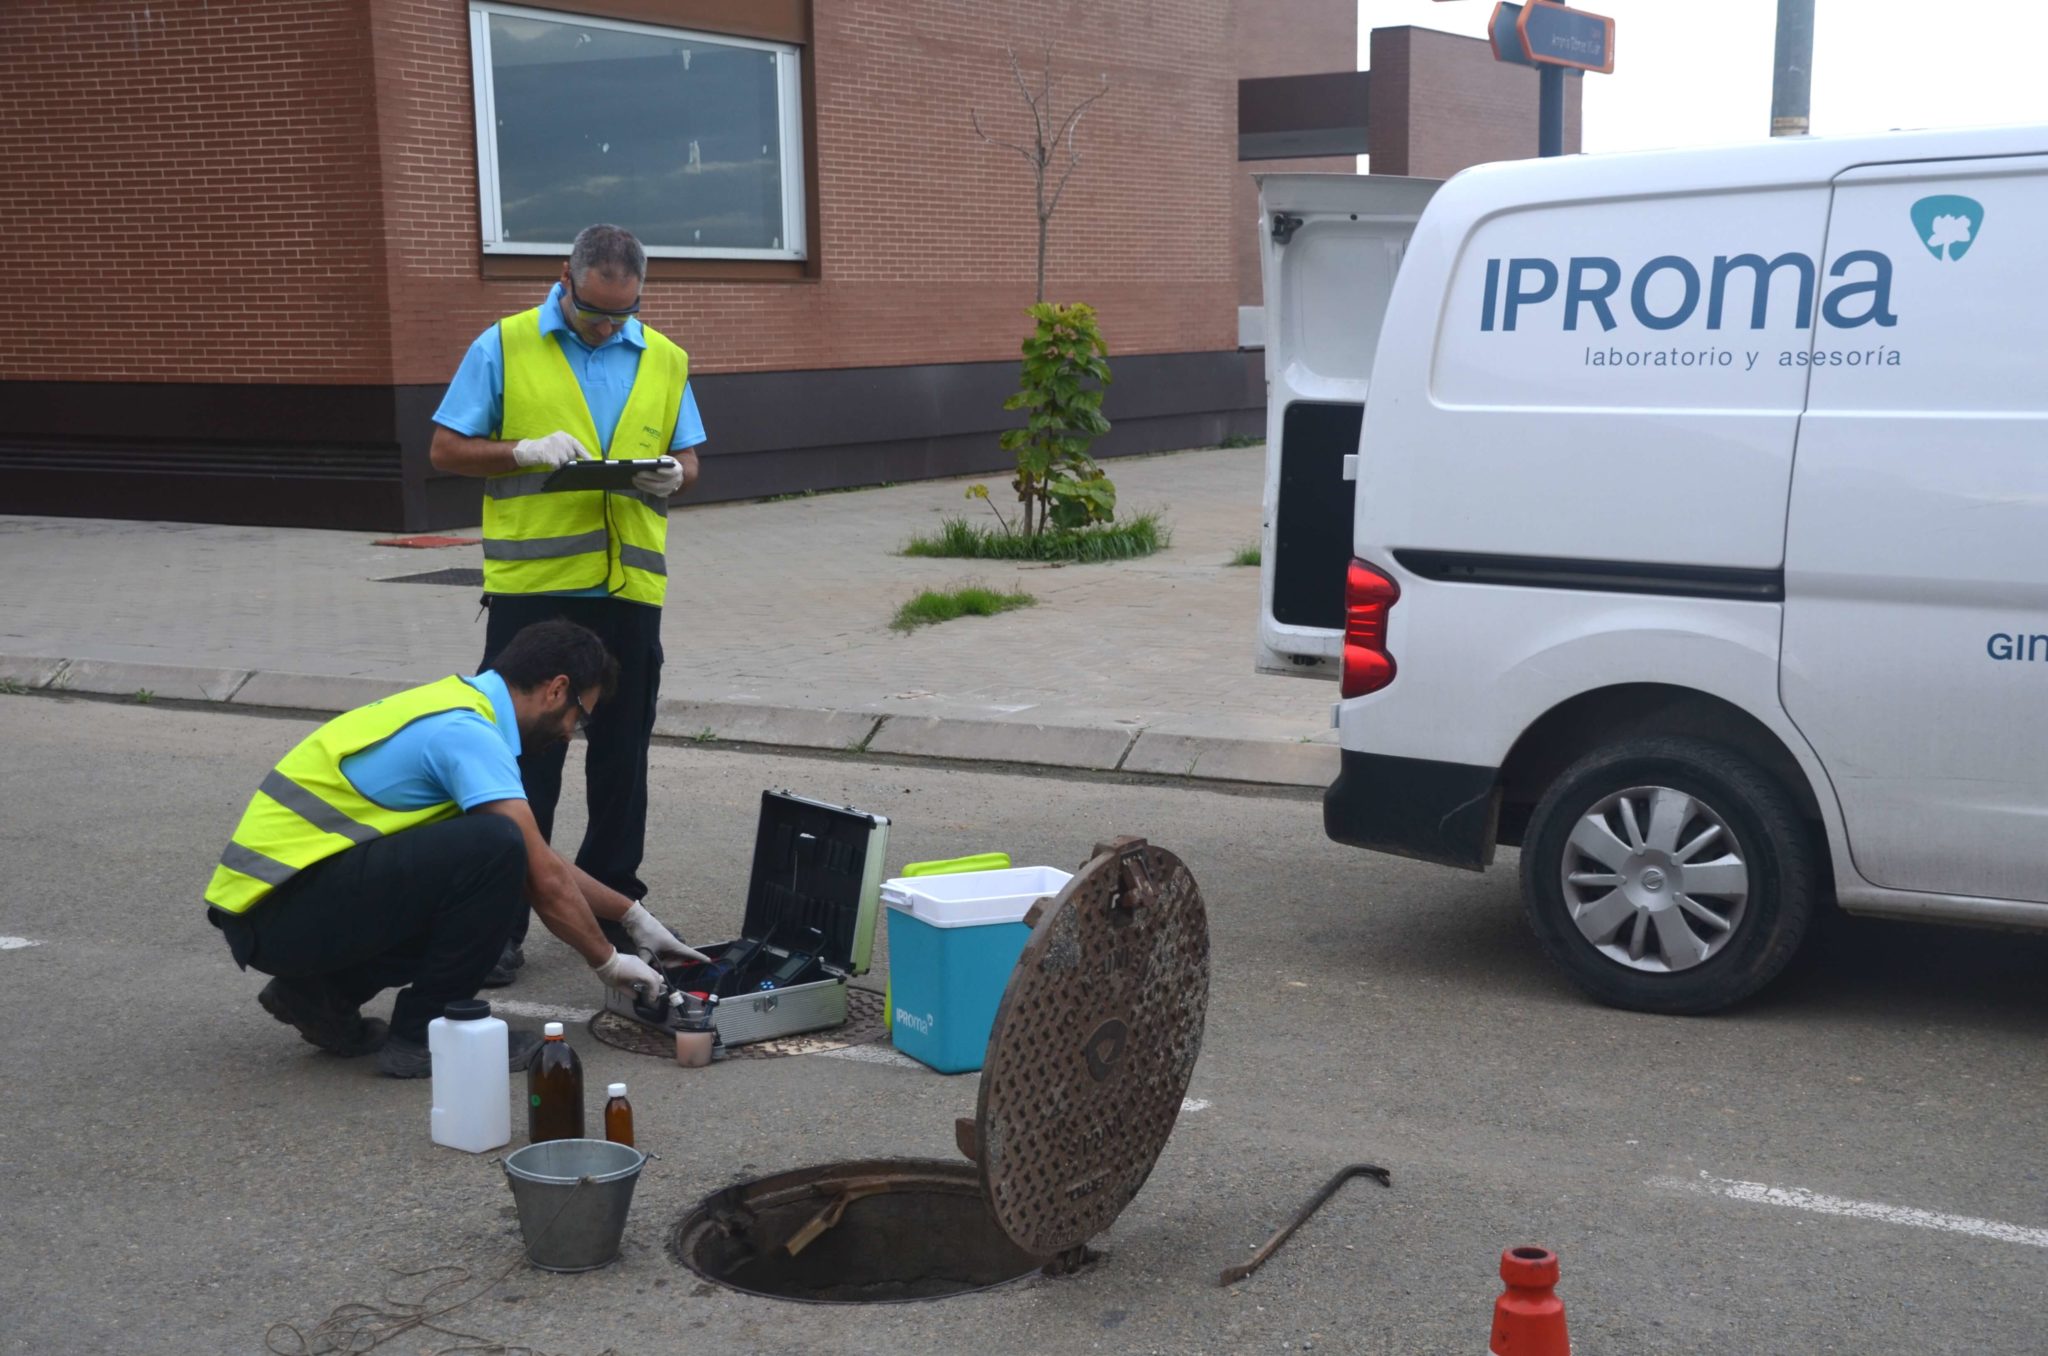 El Instituto Aragonés del Agua adjudica a IPROMA los trabajos de inspección de vertidos